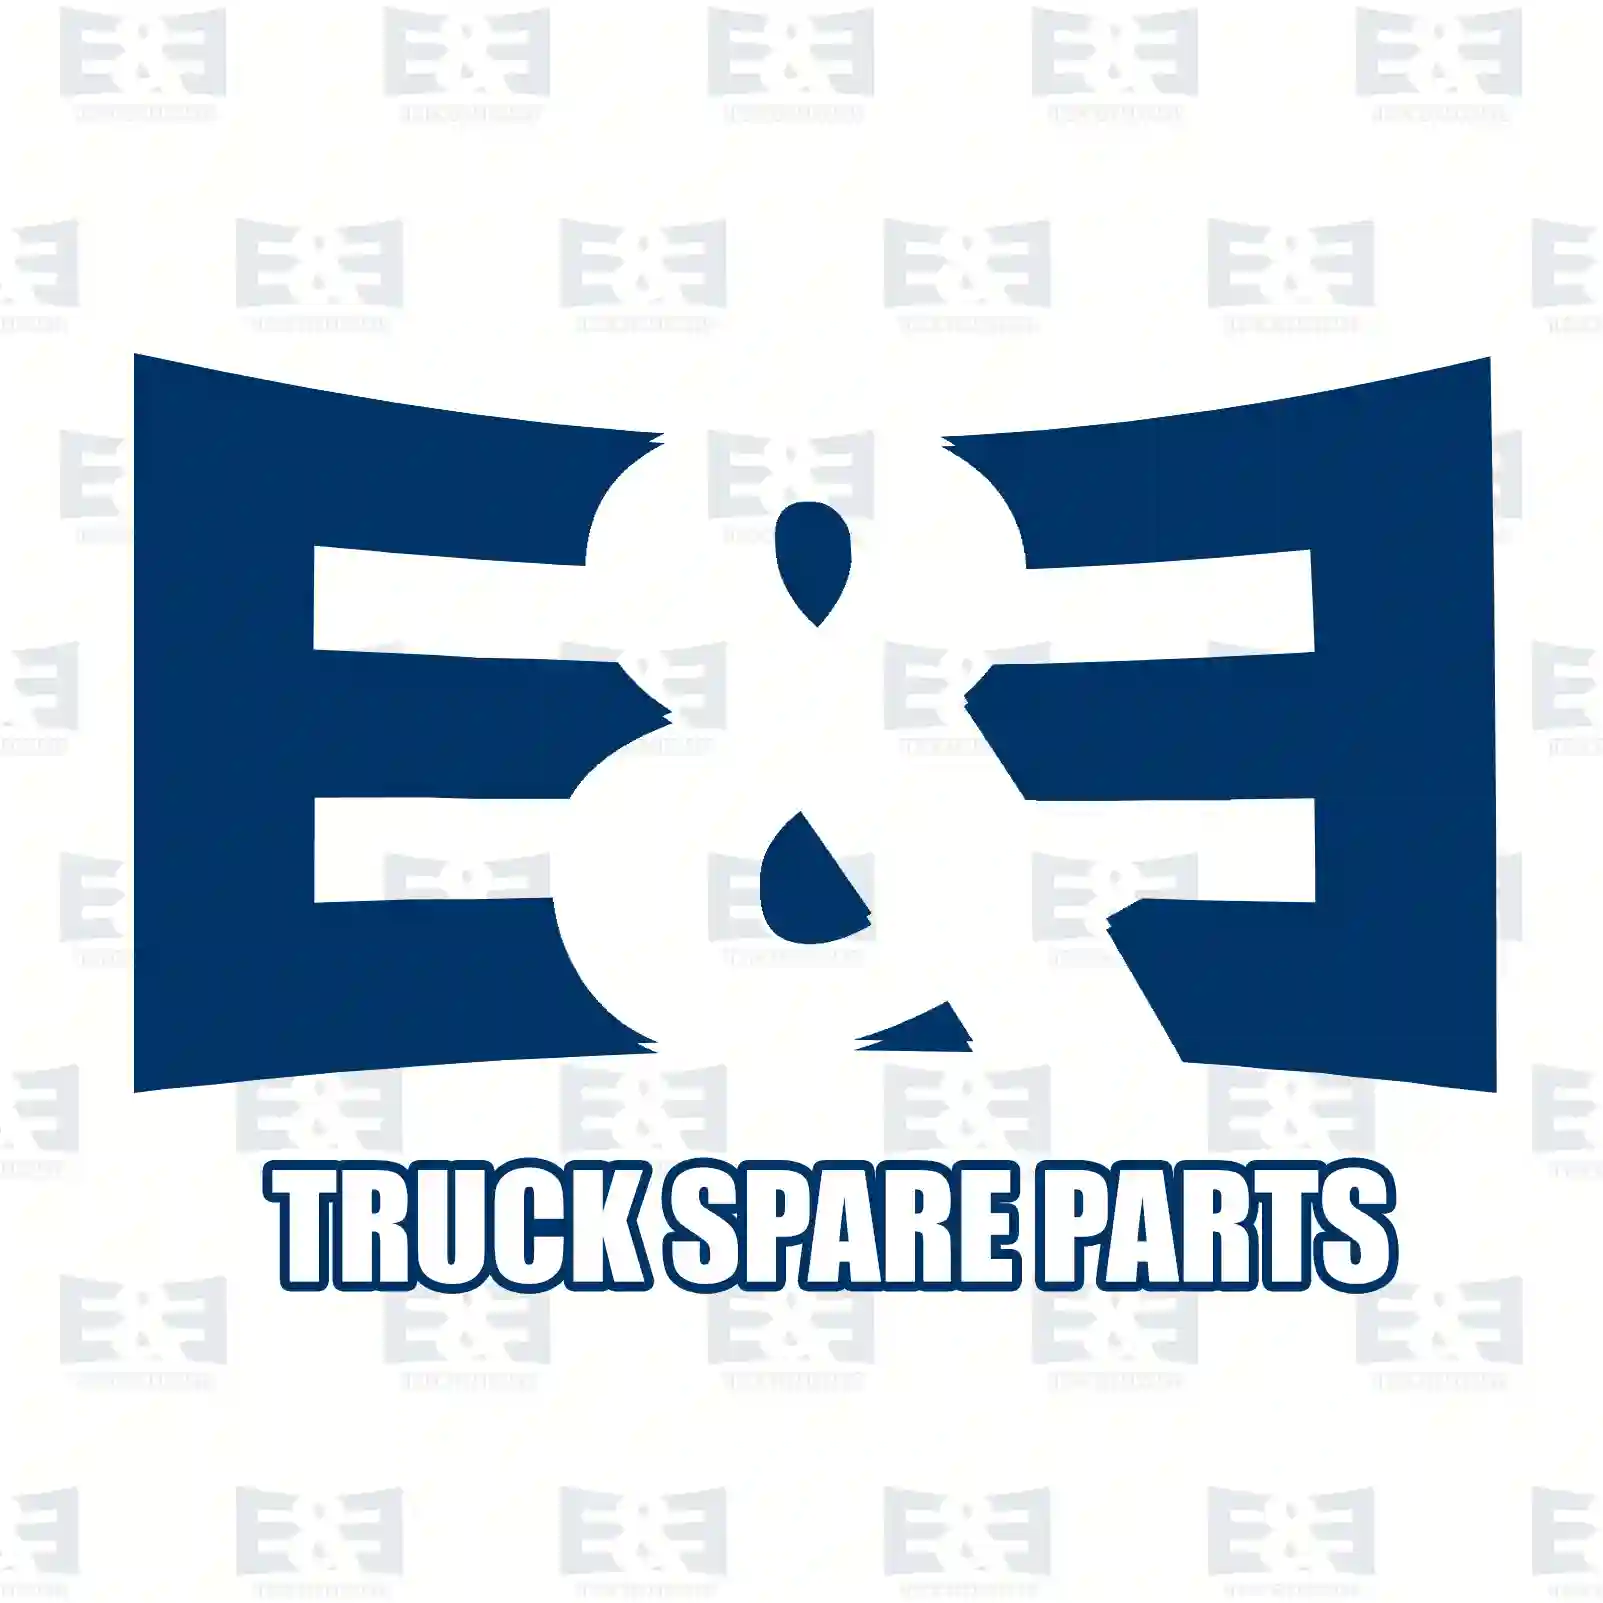 Drum brake lining kit, axle kit, 2E2294336, MBLK2390, 270544, 2705440, 272710, 2727105, 272748, 2727485, 272894, 2728947, 276048, 2760486, 3091282, 30912828, 3092695, 3092695S, 3097169, 30971691 ||  2E2294336 E&E Truck Spare Parts | Truck Spare Parts, Auotomotive Spare Parts Drum brake lining kit, axle kit, 2E2294336, MBLK2390, 270544, 2705440, 272710, 2727105, 272748, 2727485, 272894, 2728947, 276048, 2760486, 3091282, 30912828, 3092695, 3092695S, 3097169, 30971691 ||  2E2294336 E&E Truck Spare Parts | Truck Spare Parts, Auotomotive Spare Parts